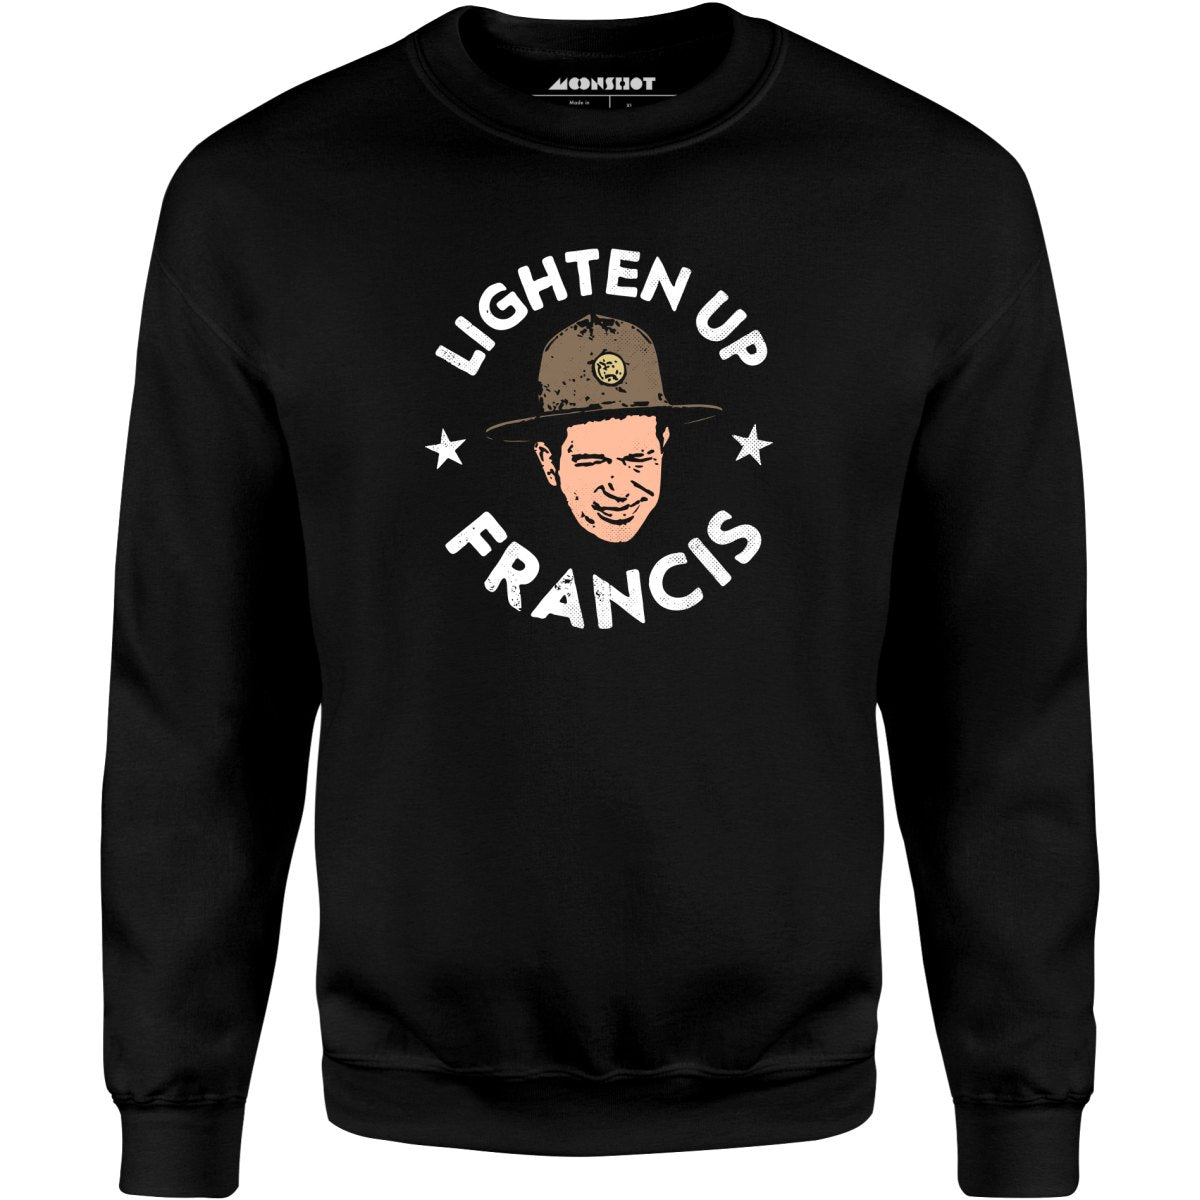 Lighten Up Francis - Unisex Sweatshirt